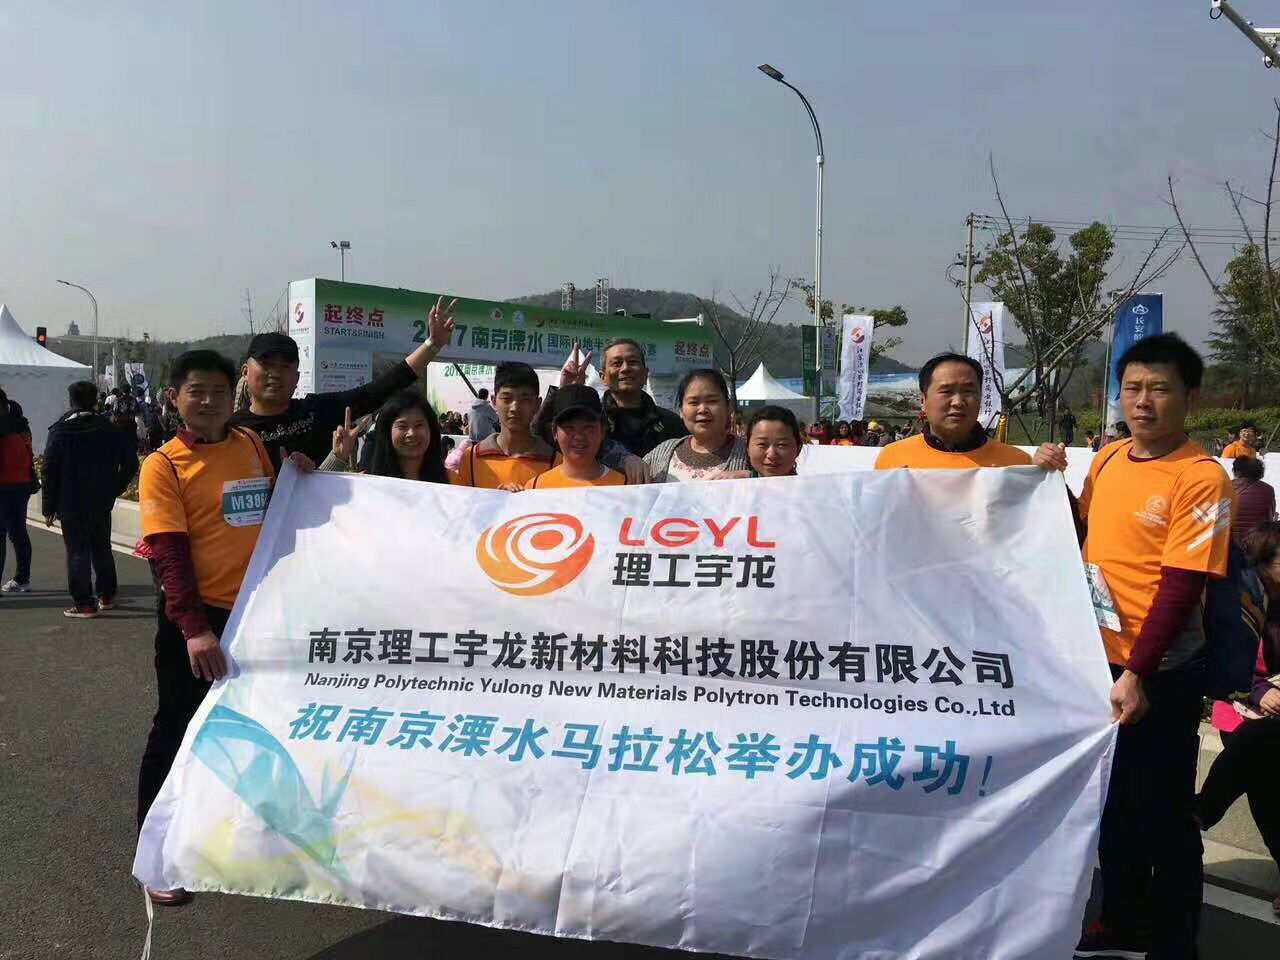 j9九游会国际员工参加溧水迷你马拉松